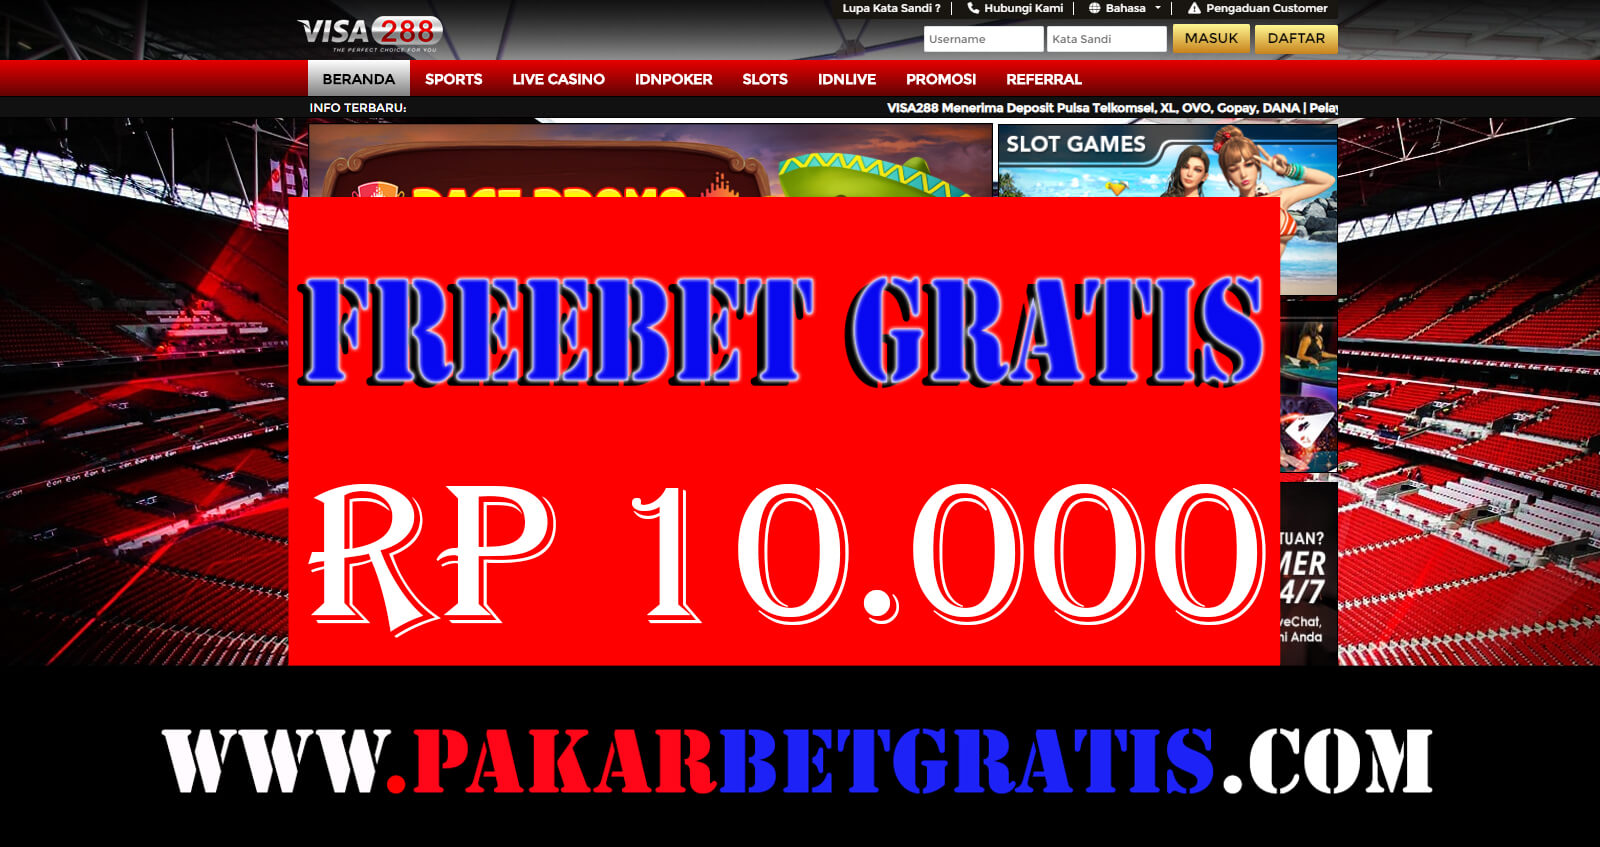 Freebet Gratis Visa288 Rp 10.000